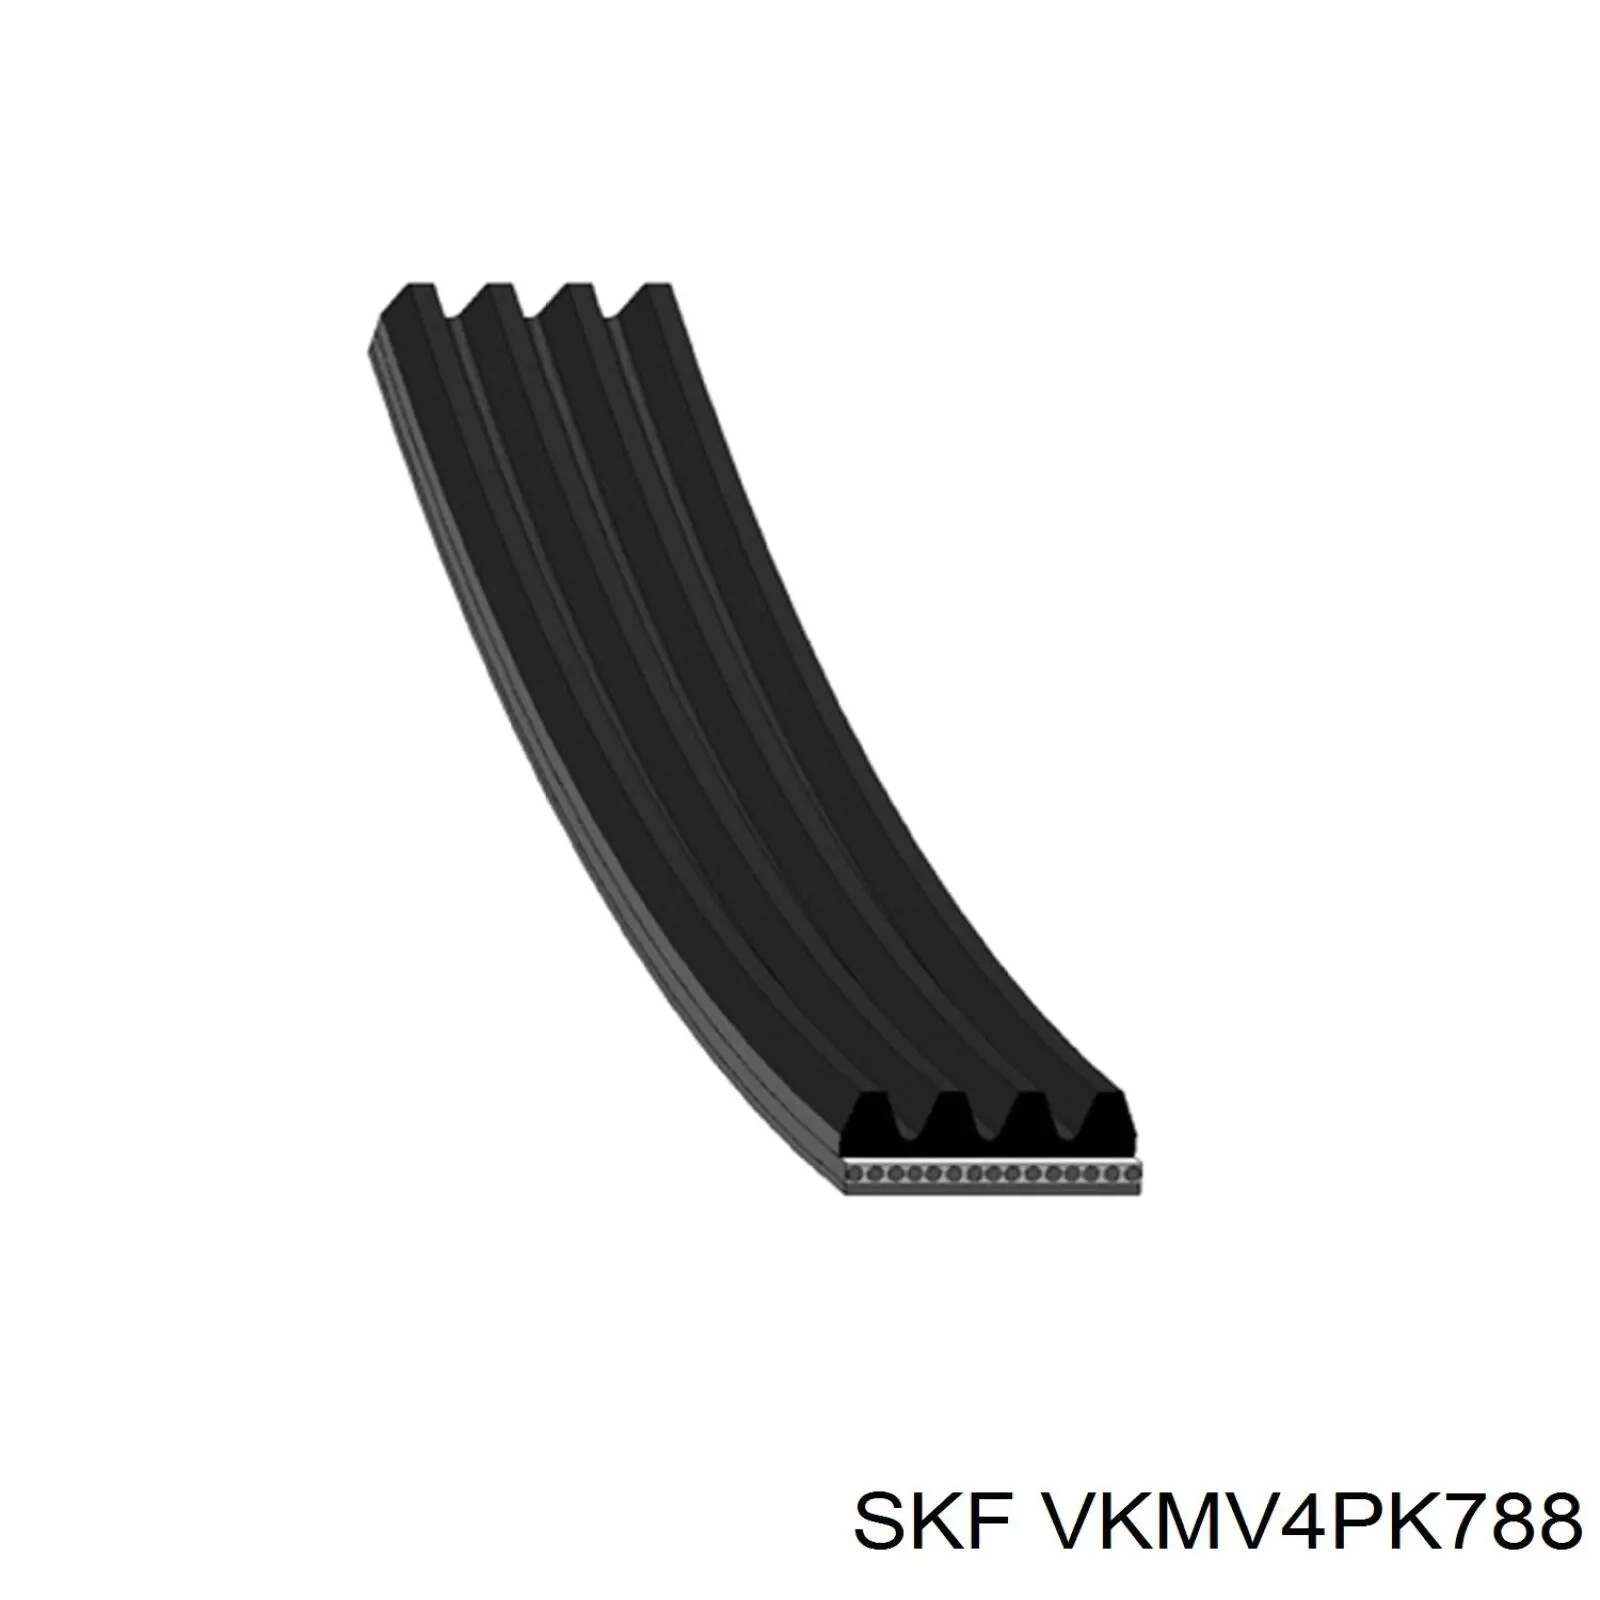 VKMV 4PK788 SKF correa trapezoidal